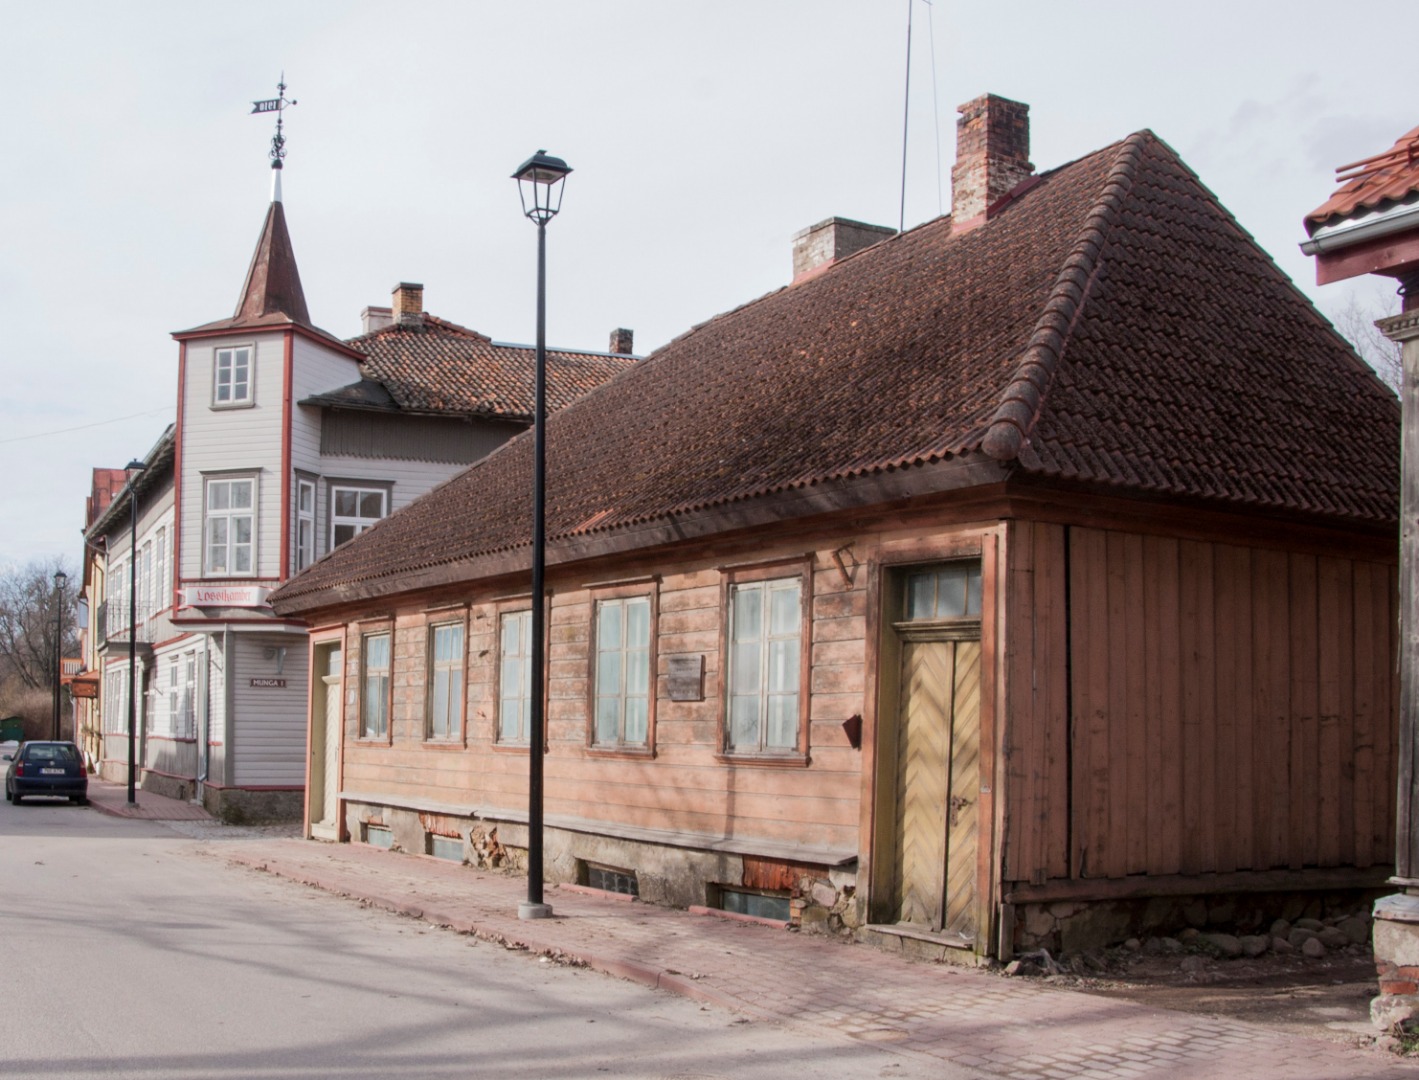 foto Viljandi Lossi tn 11 elumaja (mantelkorstnaga) 1977 rephoto